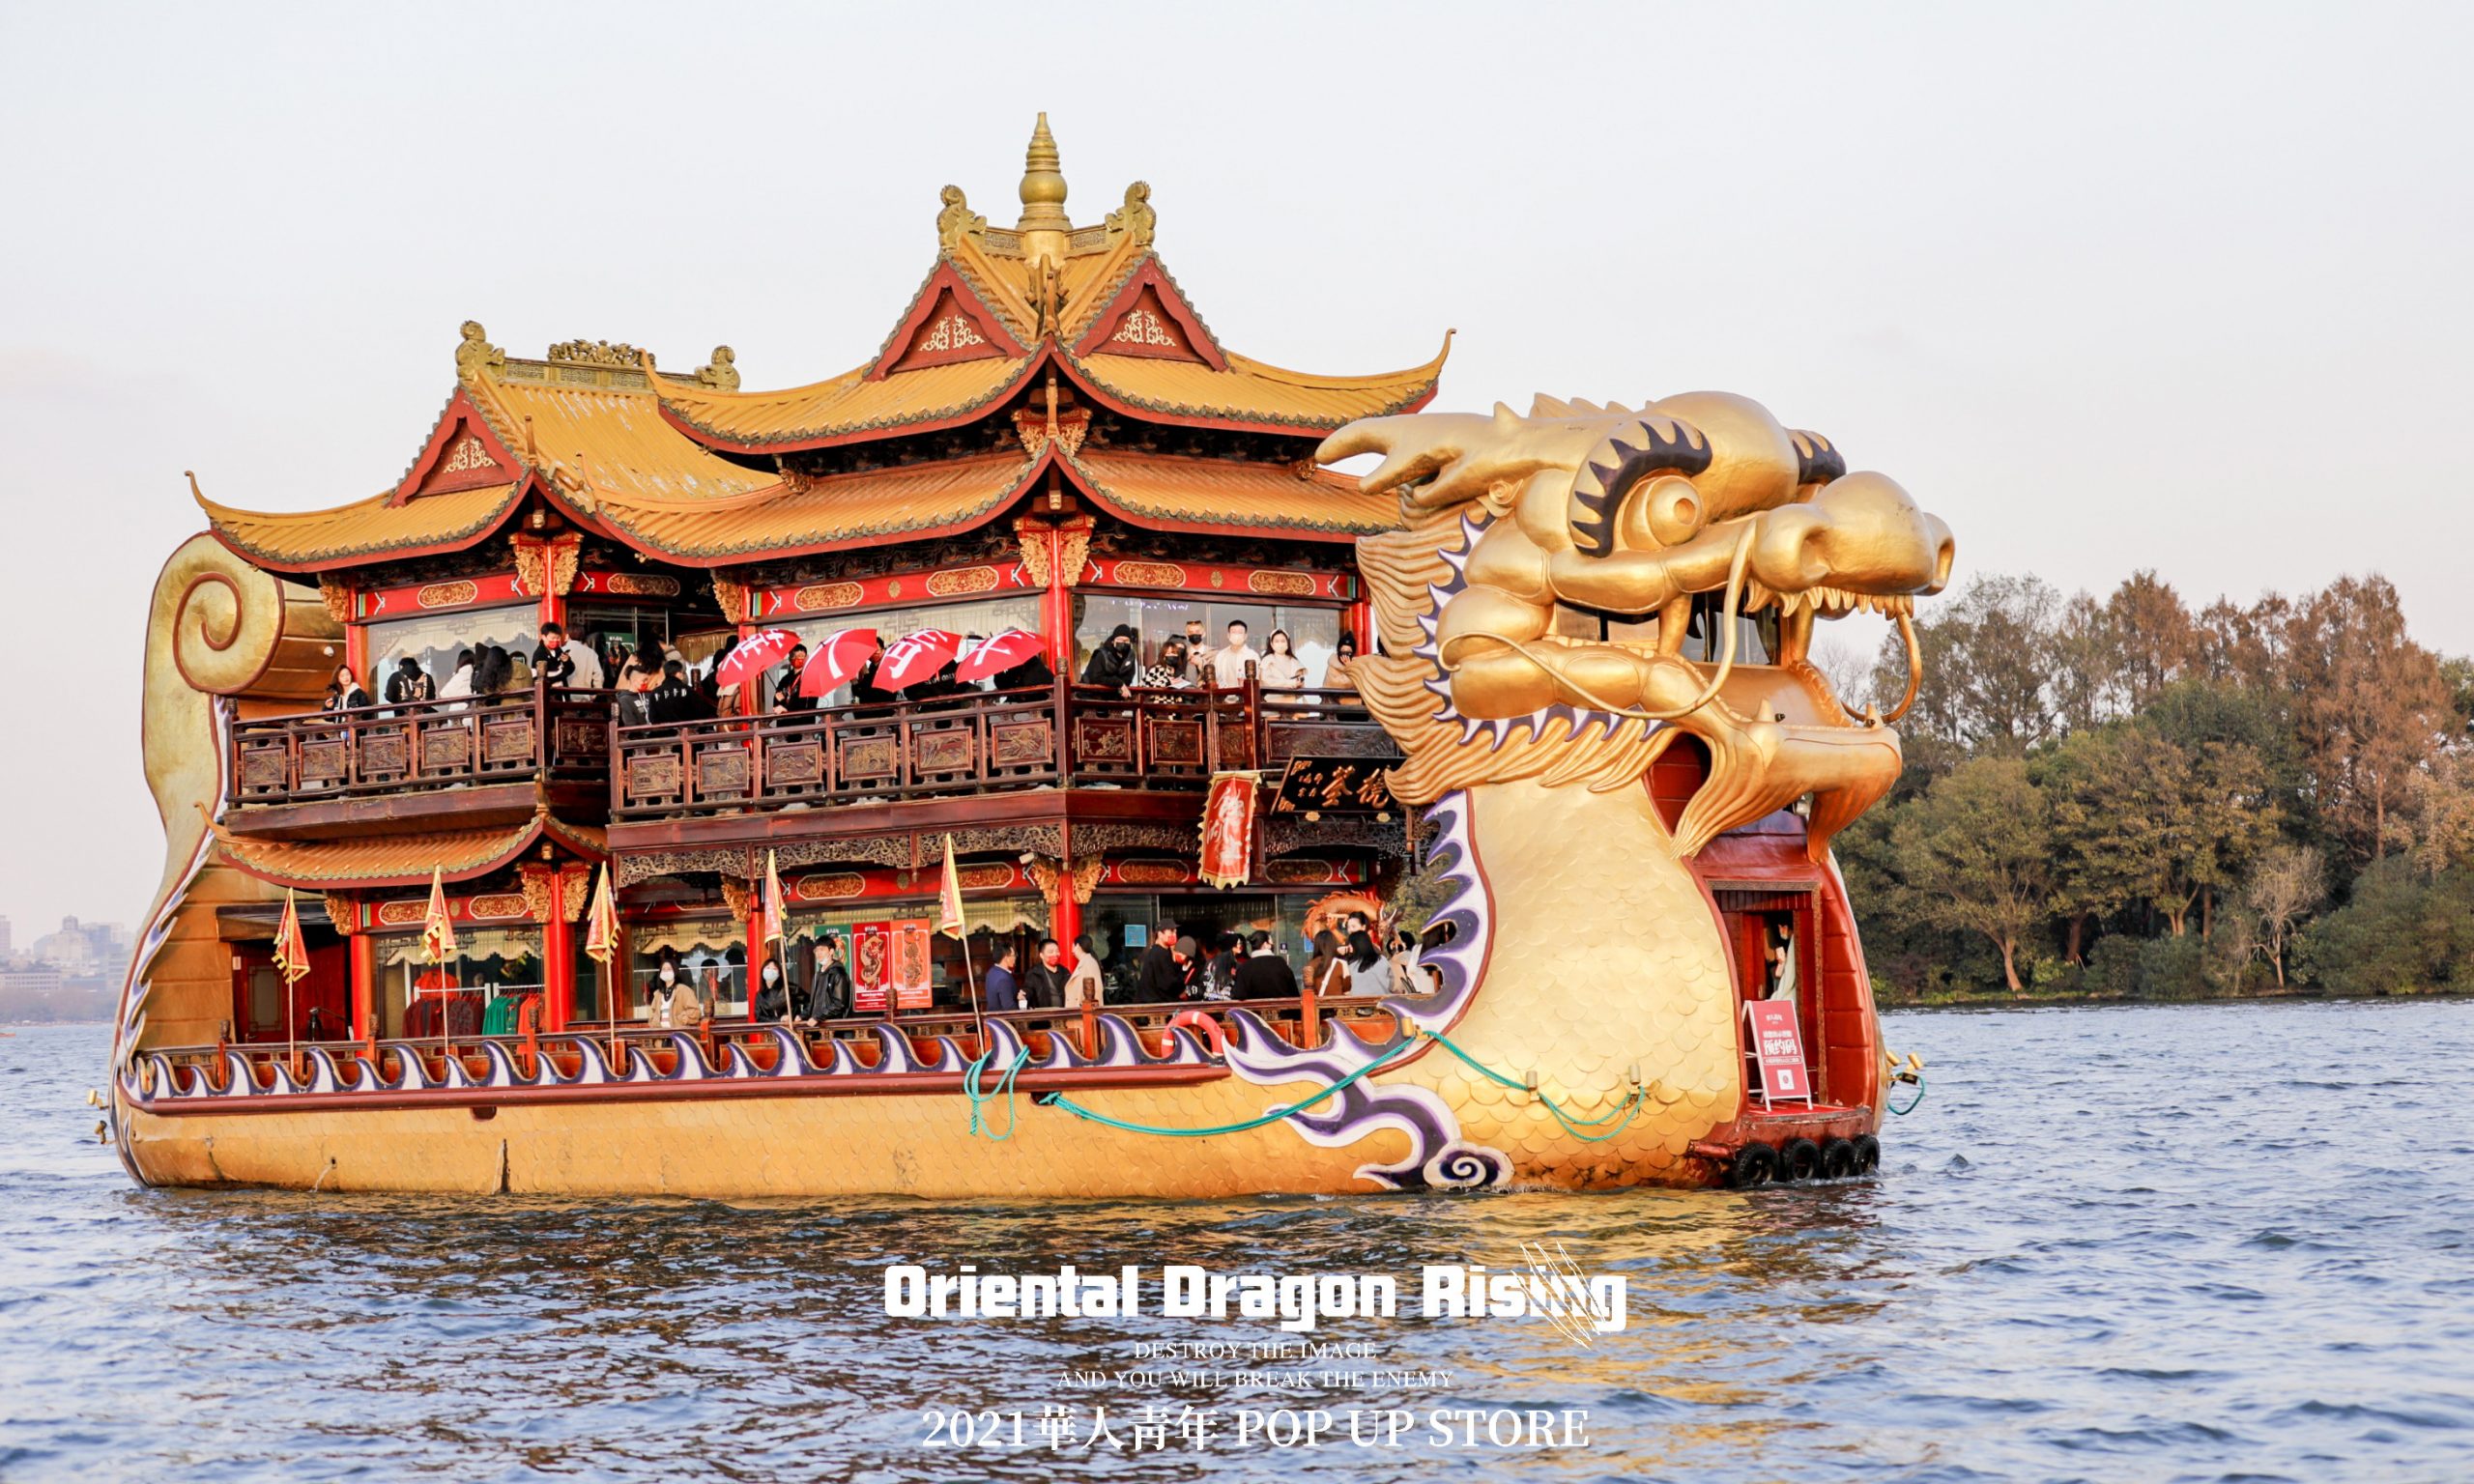 華人青年 OCCUPY「Oriental Dragon Rising」龙船巡游 POPUP 于杭州西湖正式揭幕